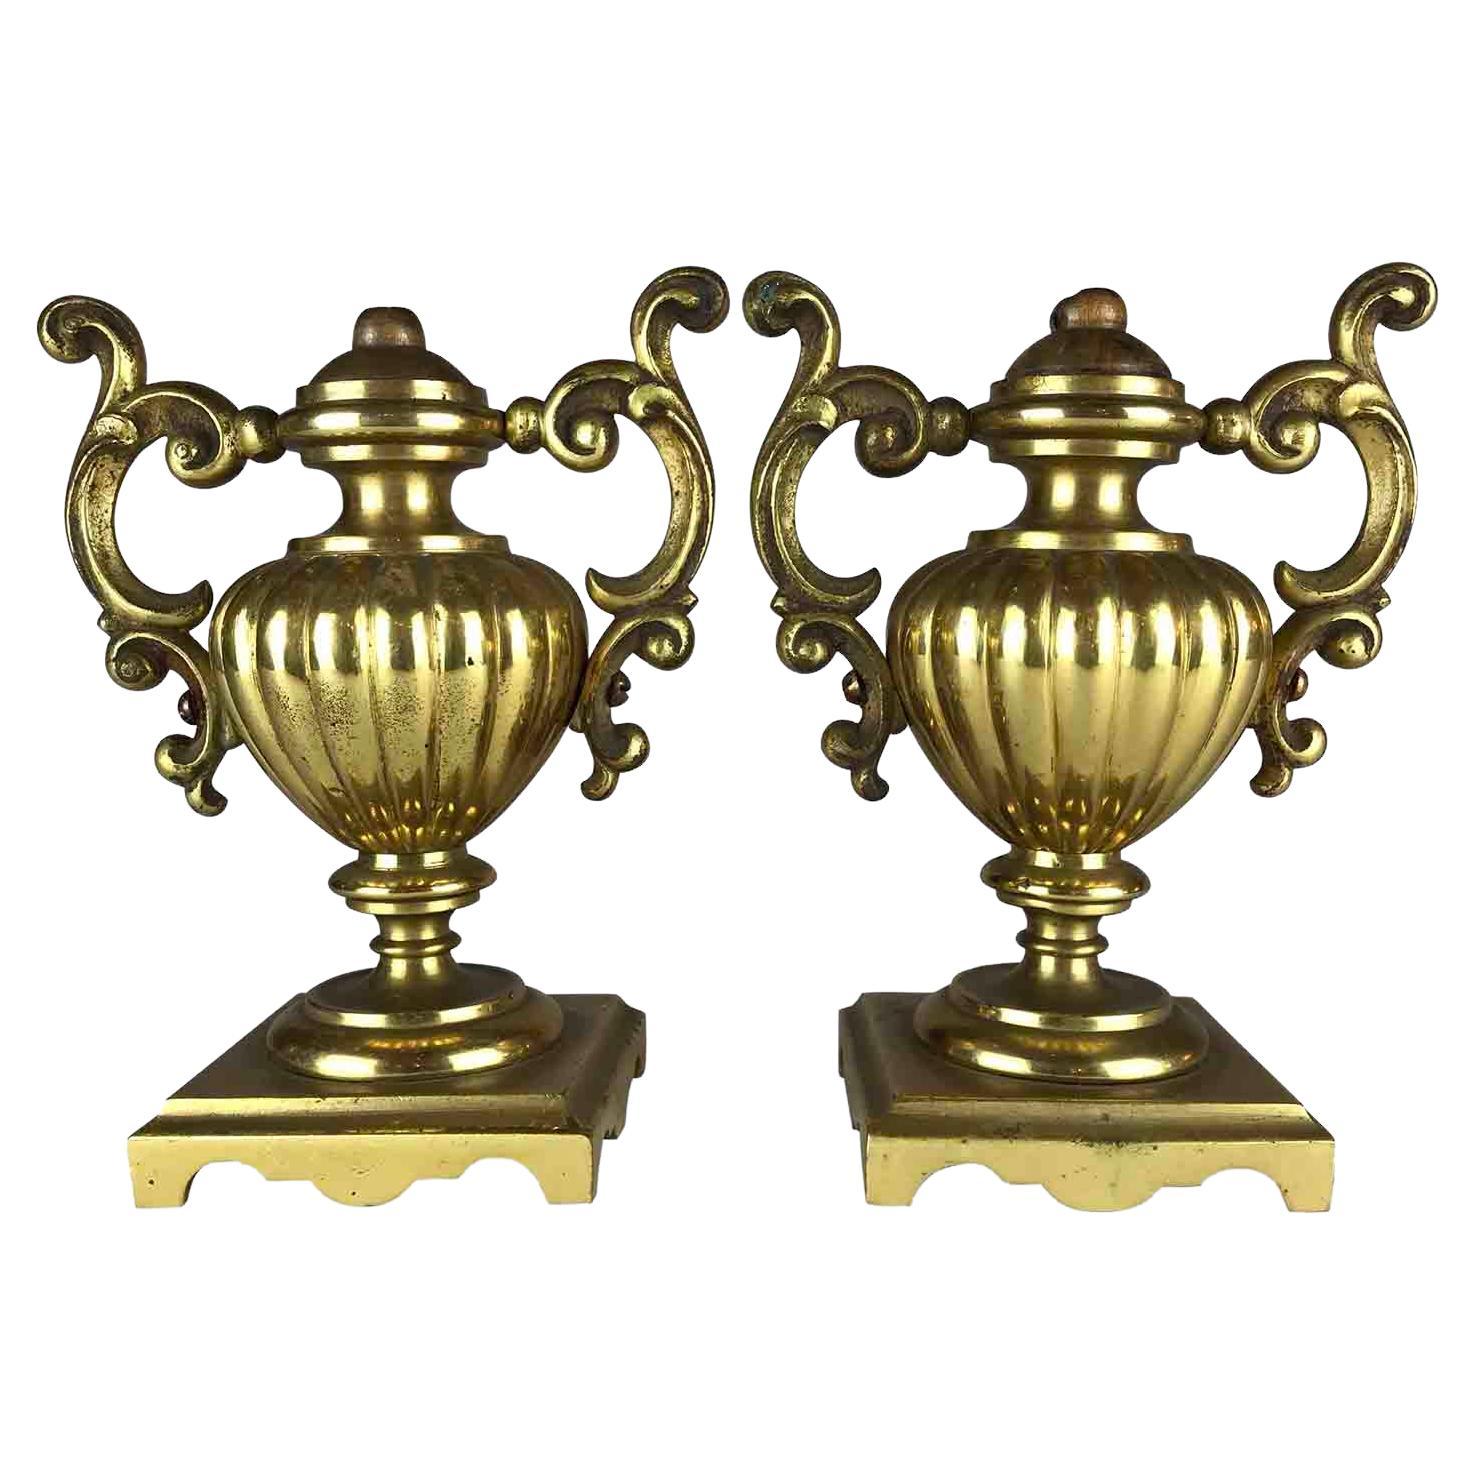 Pair of Italian Neoclassical Gilt Bronze Urn Vases, circa 1820s